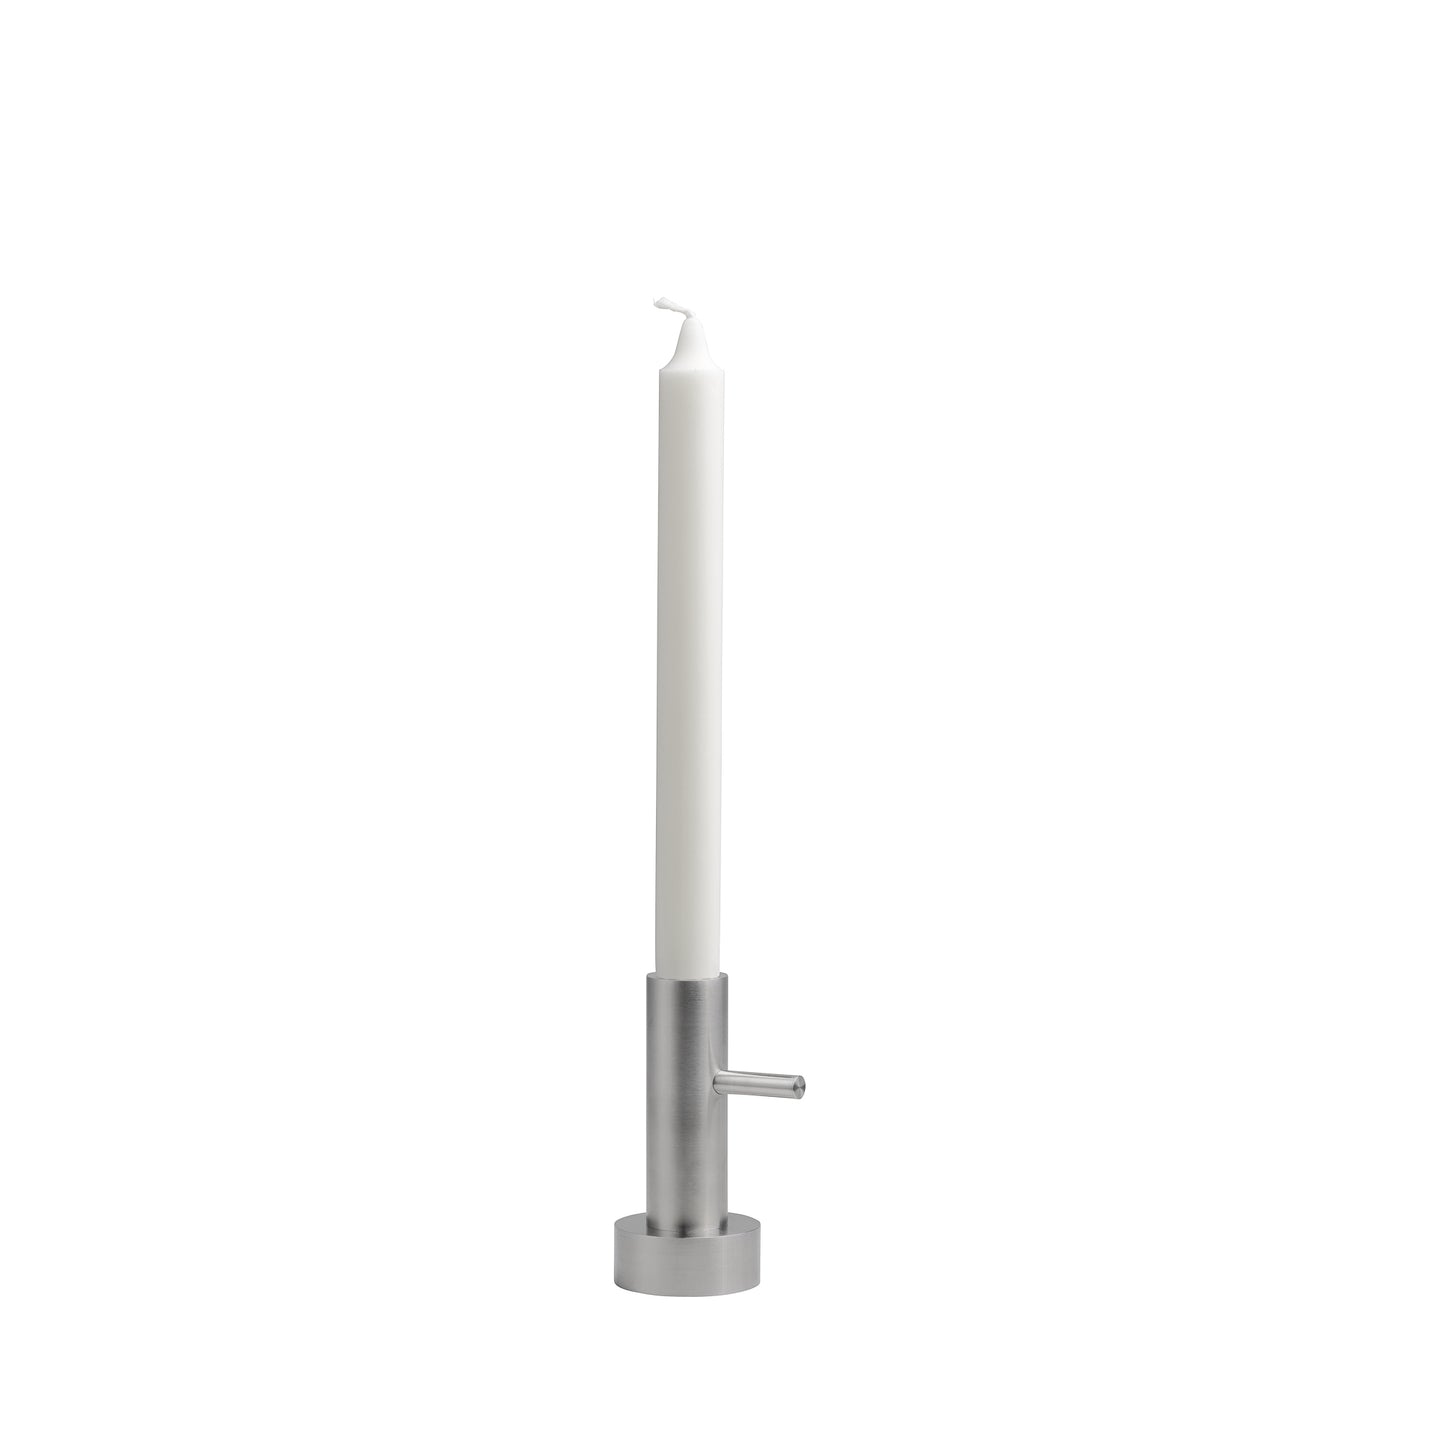 Candleholder Candlestick Single #1 by Fritz Hansen #Steel